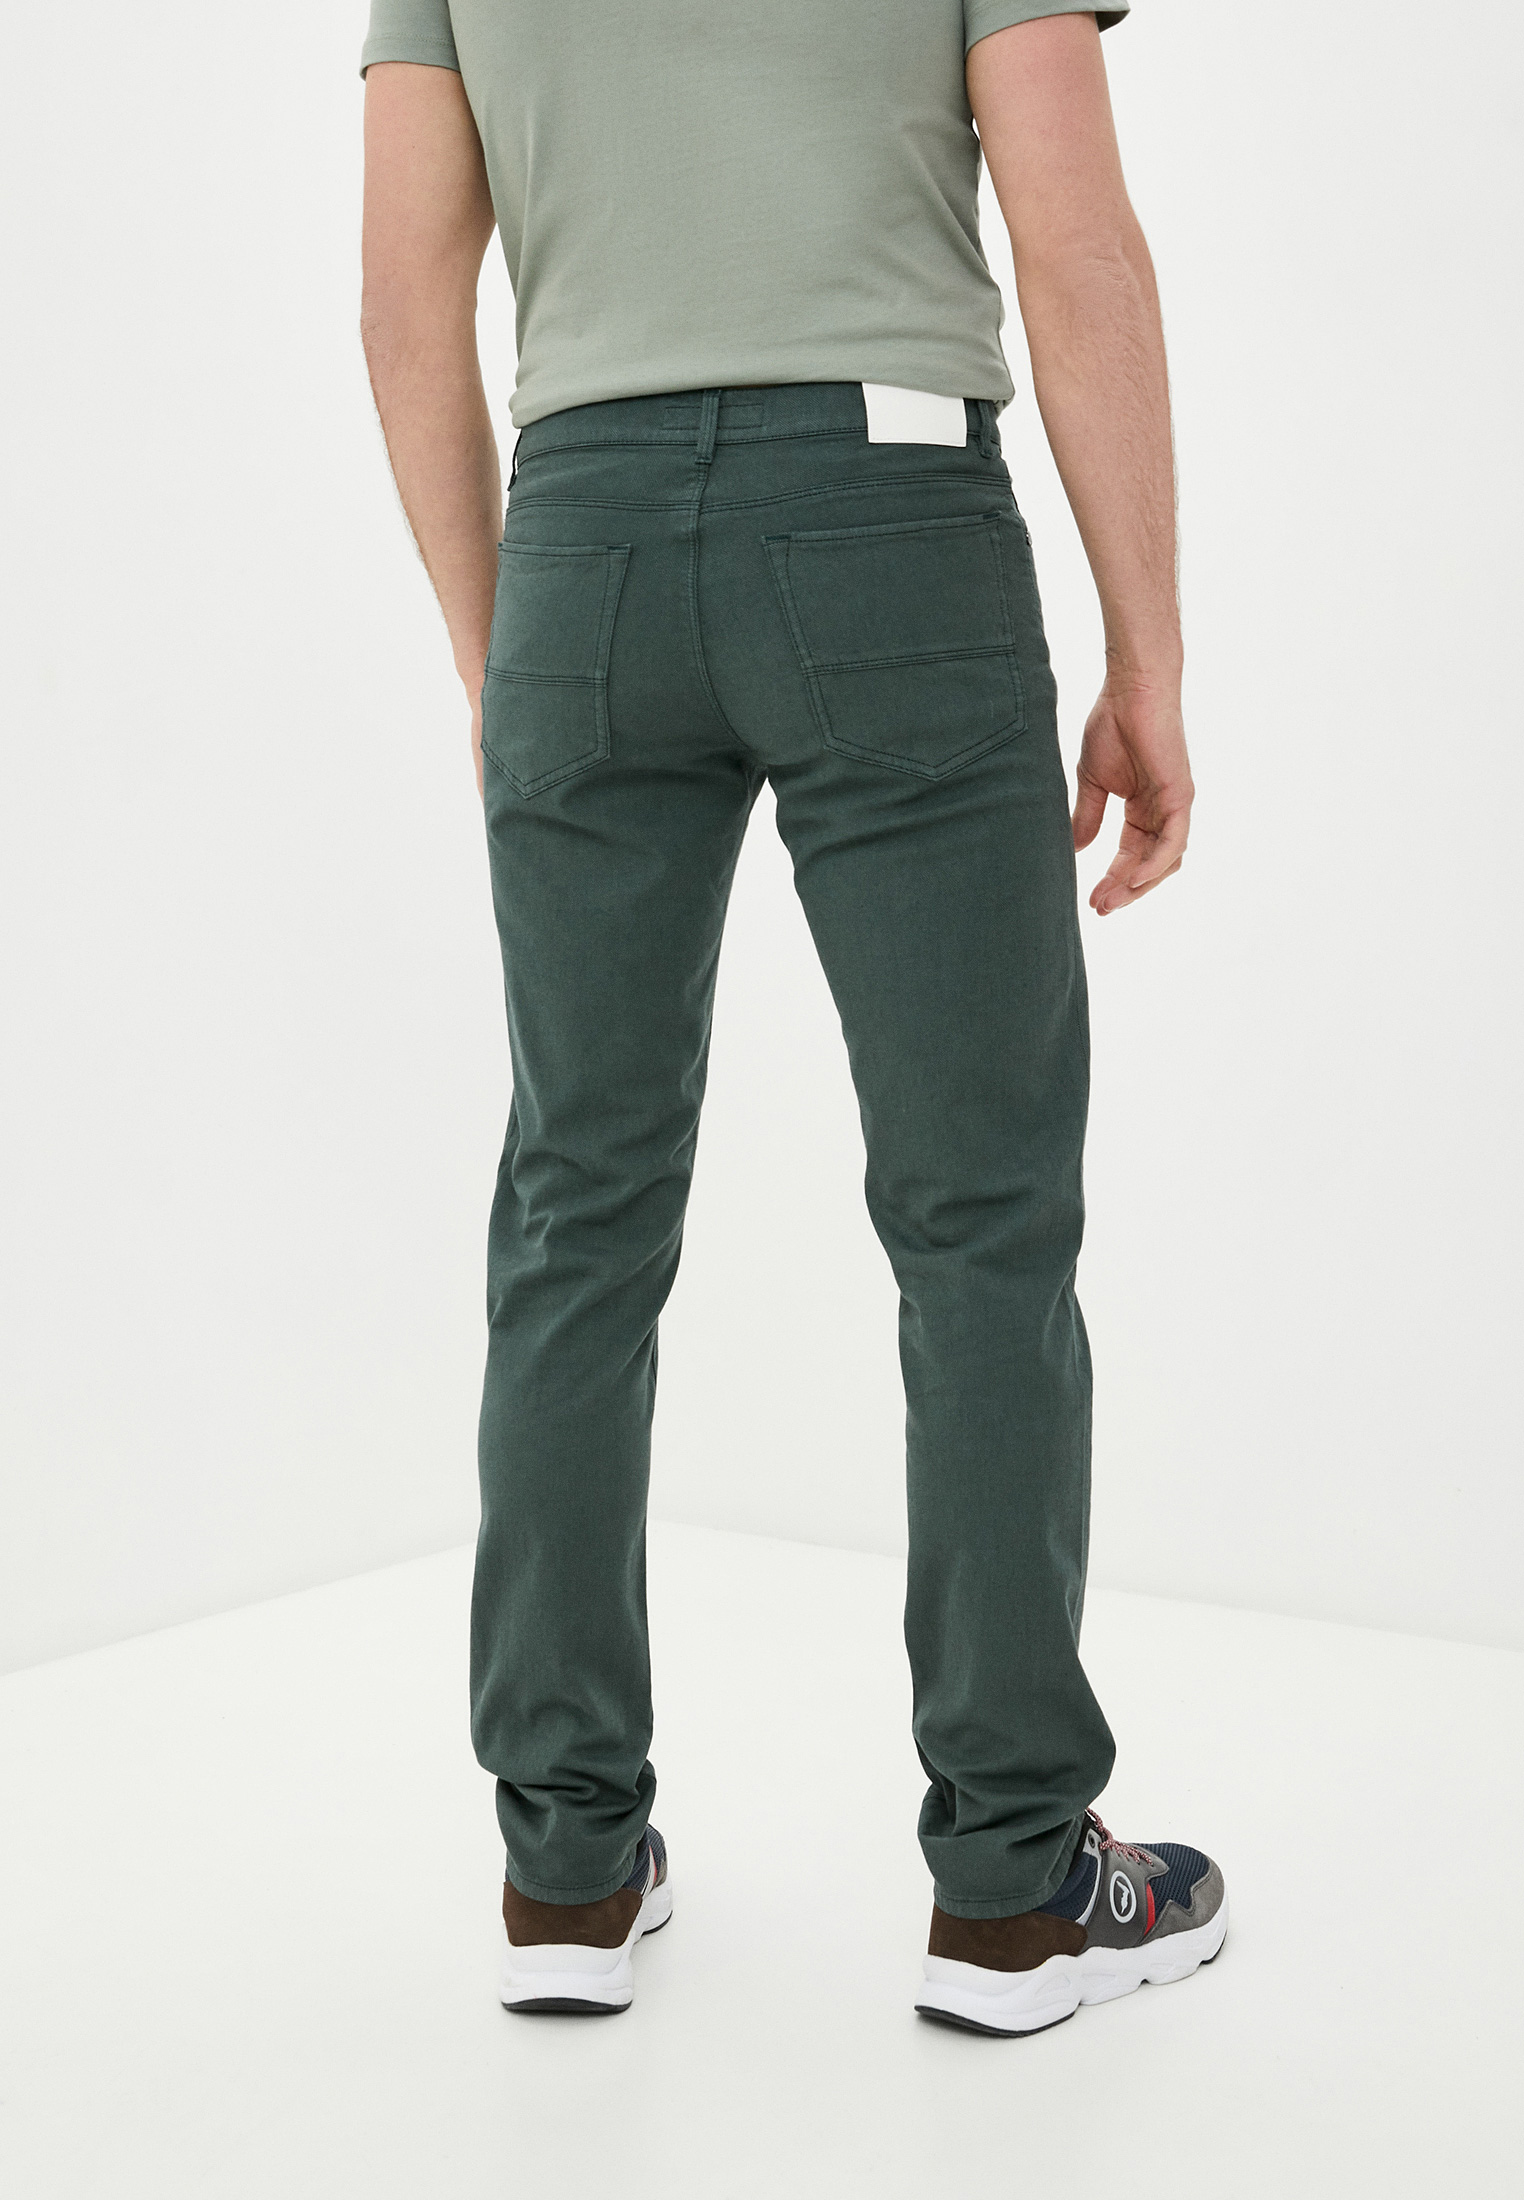 Мужские повседневные брюки Trussardi (Труссарди) 52J00007-1T004945: изображение 4